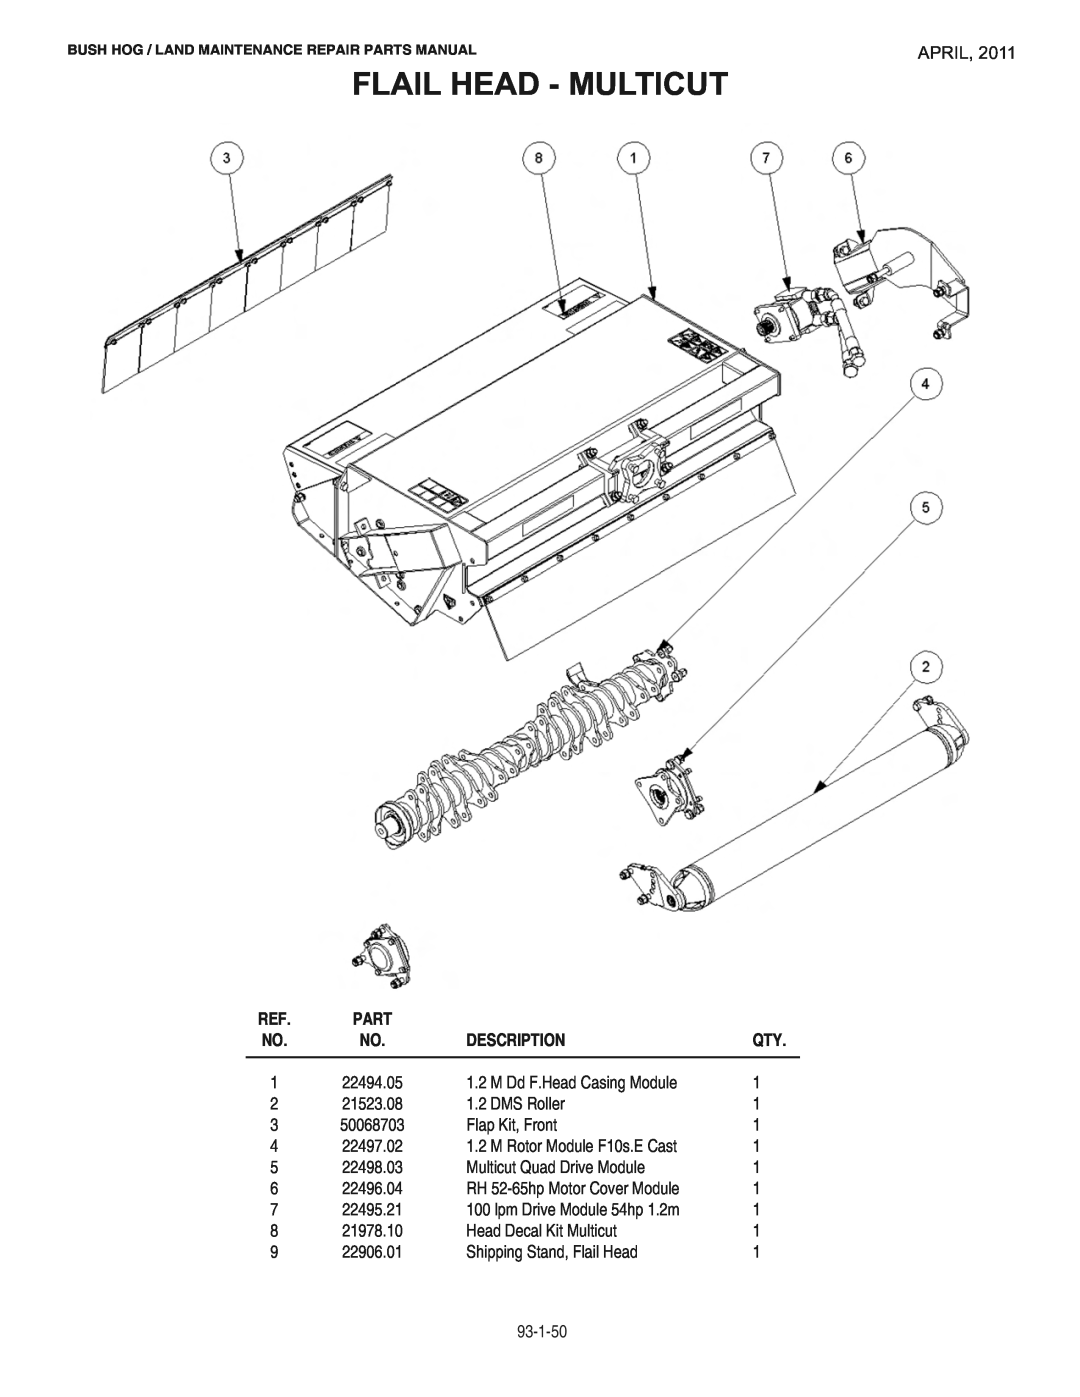 Bush Hog RMB1865E manual Flail Head - Multicut, April, Description 